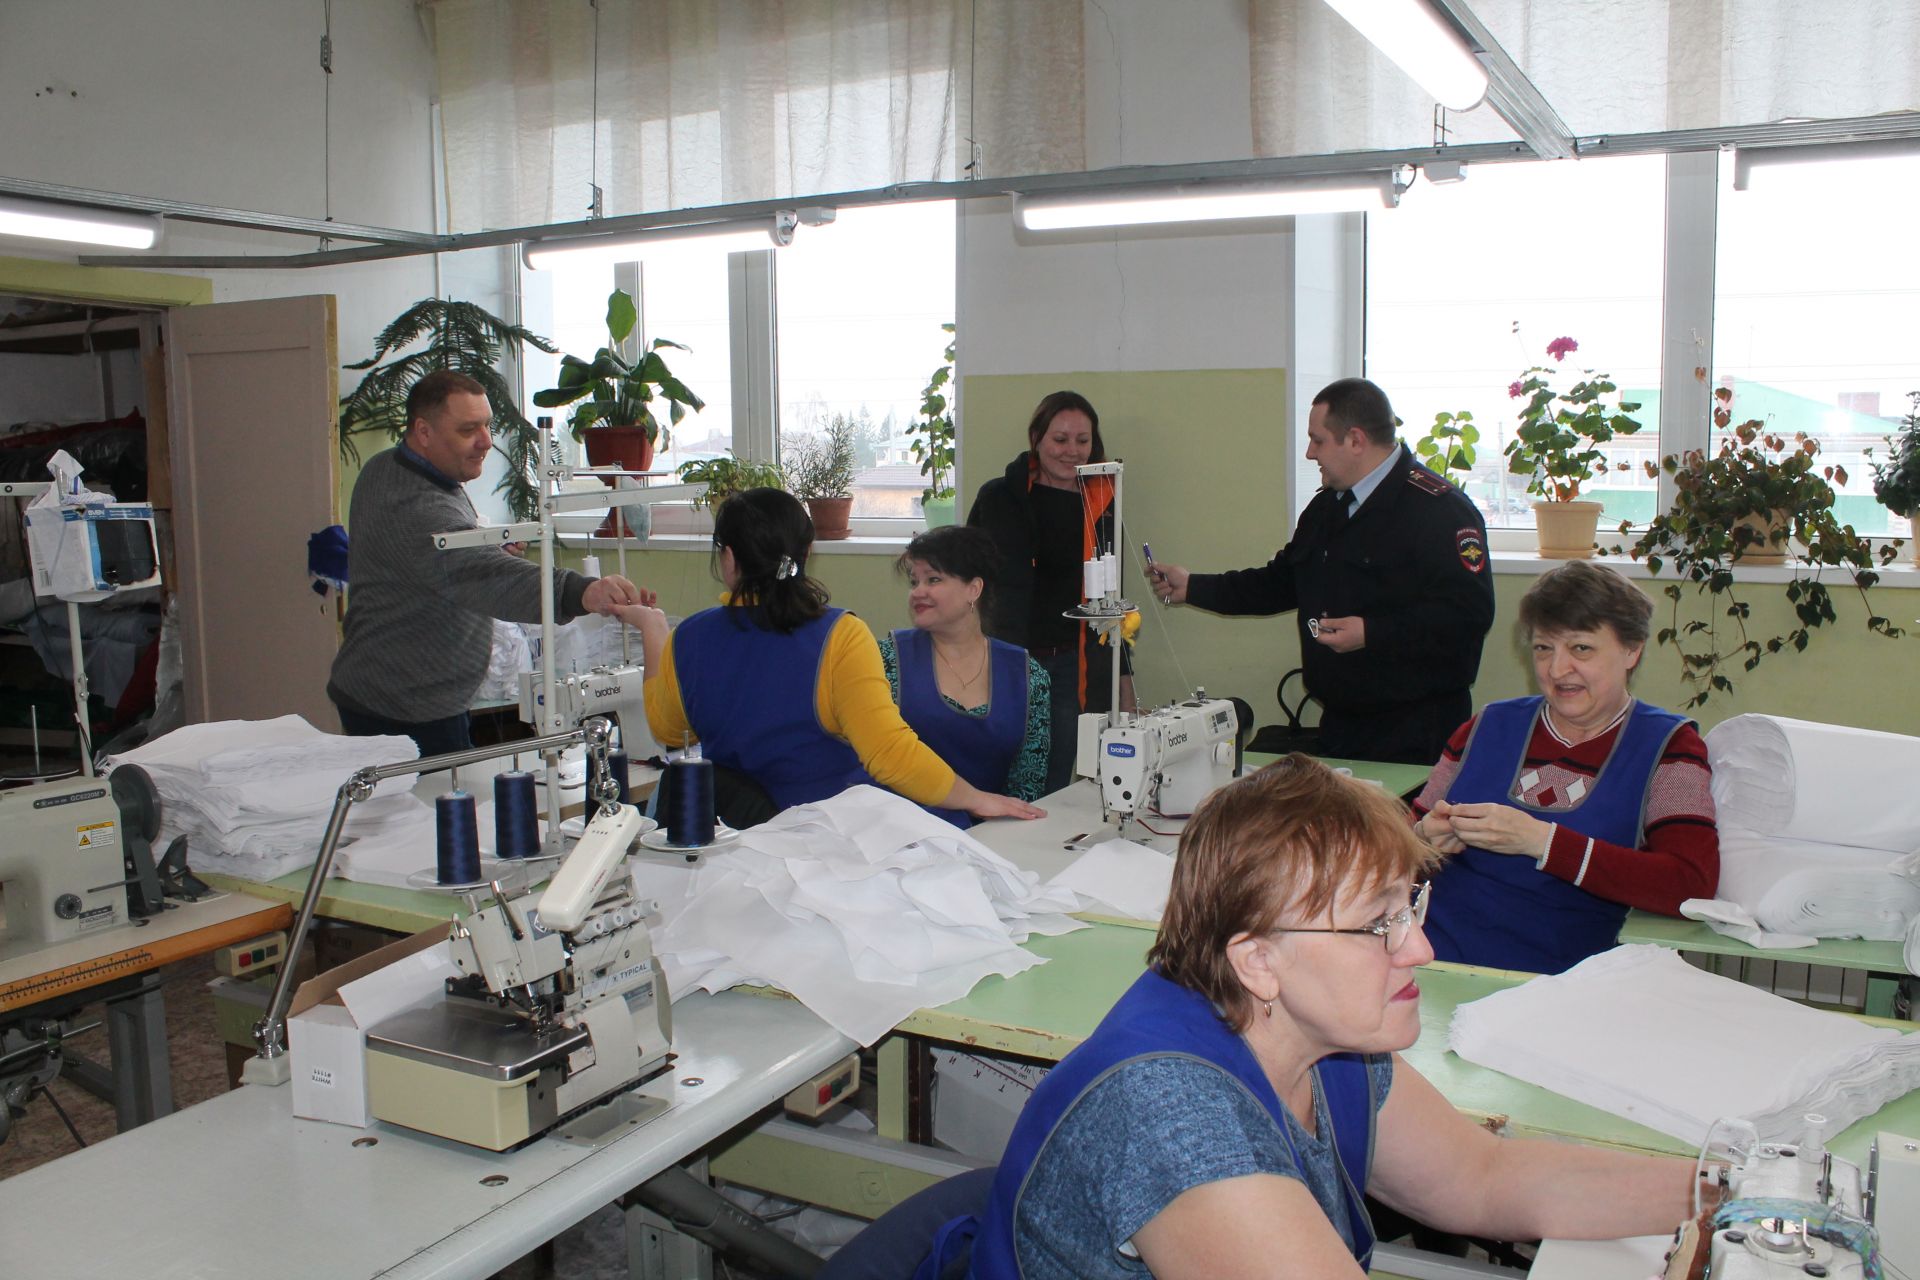 Перед 8 марта сотрудники ГИБДД посетили фабрику художественного ткачества